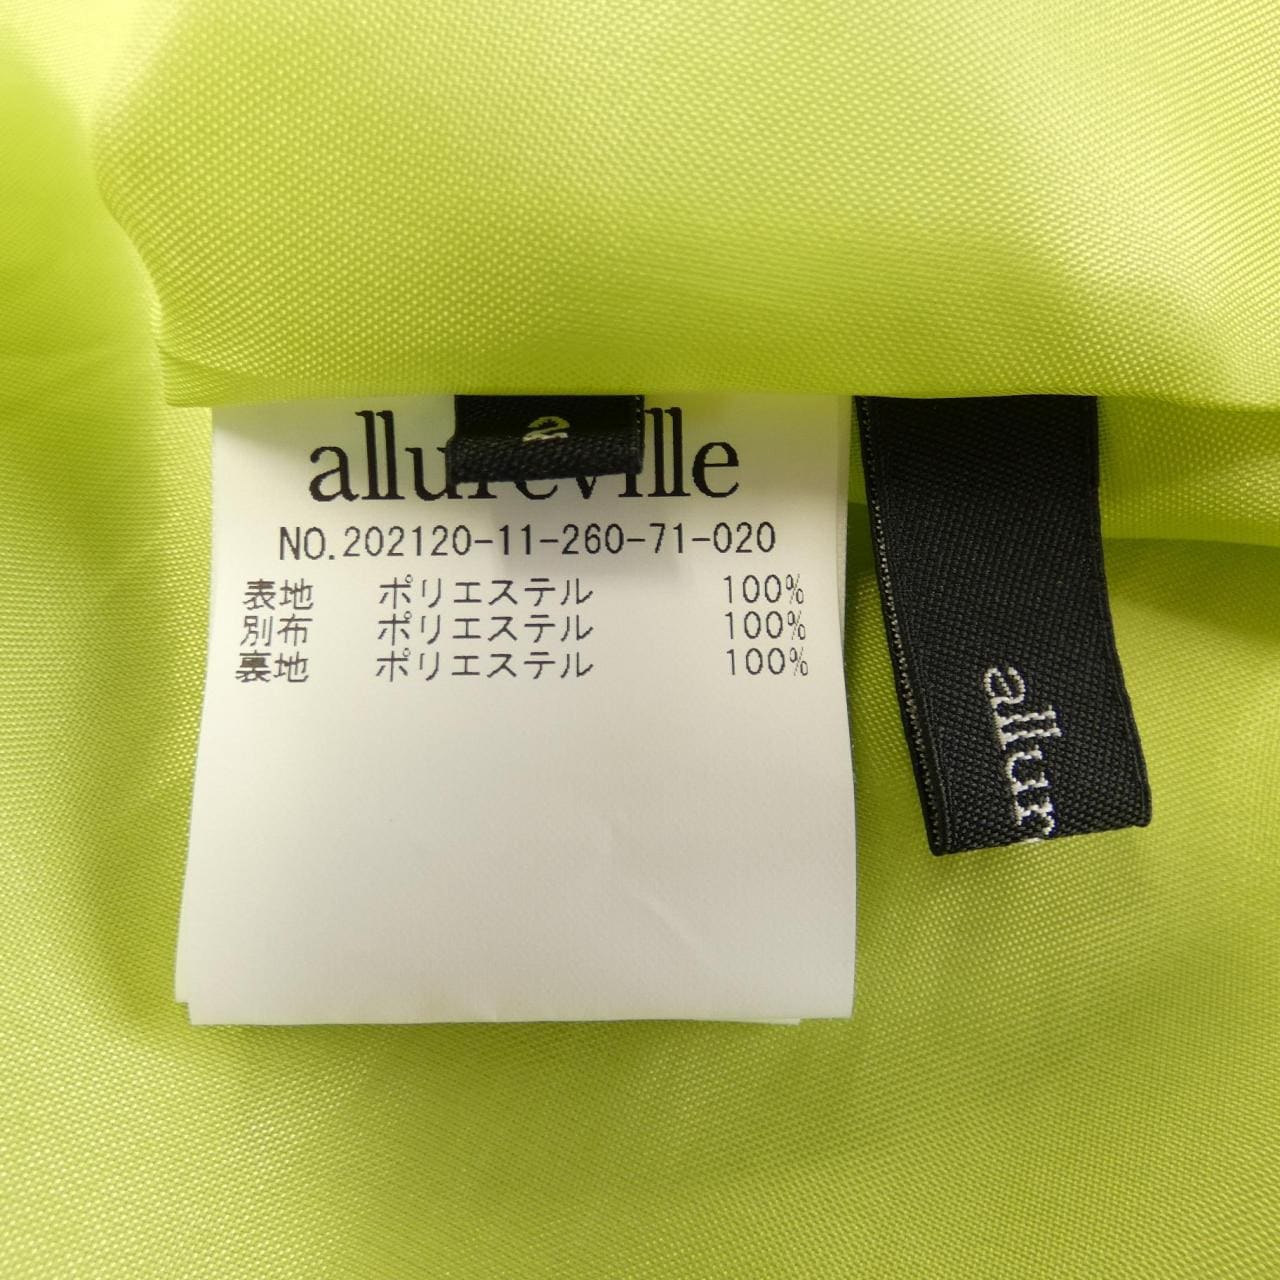 阿尔阿贝尔allureville裙